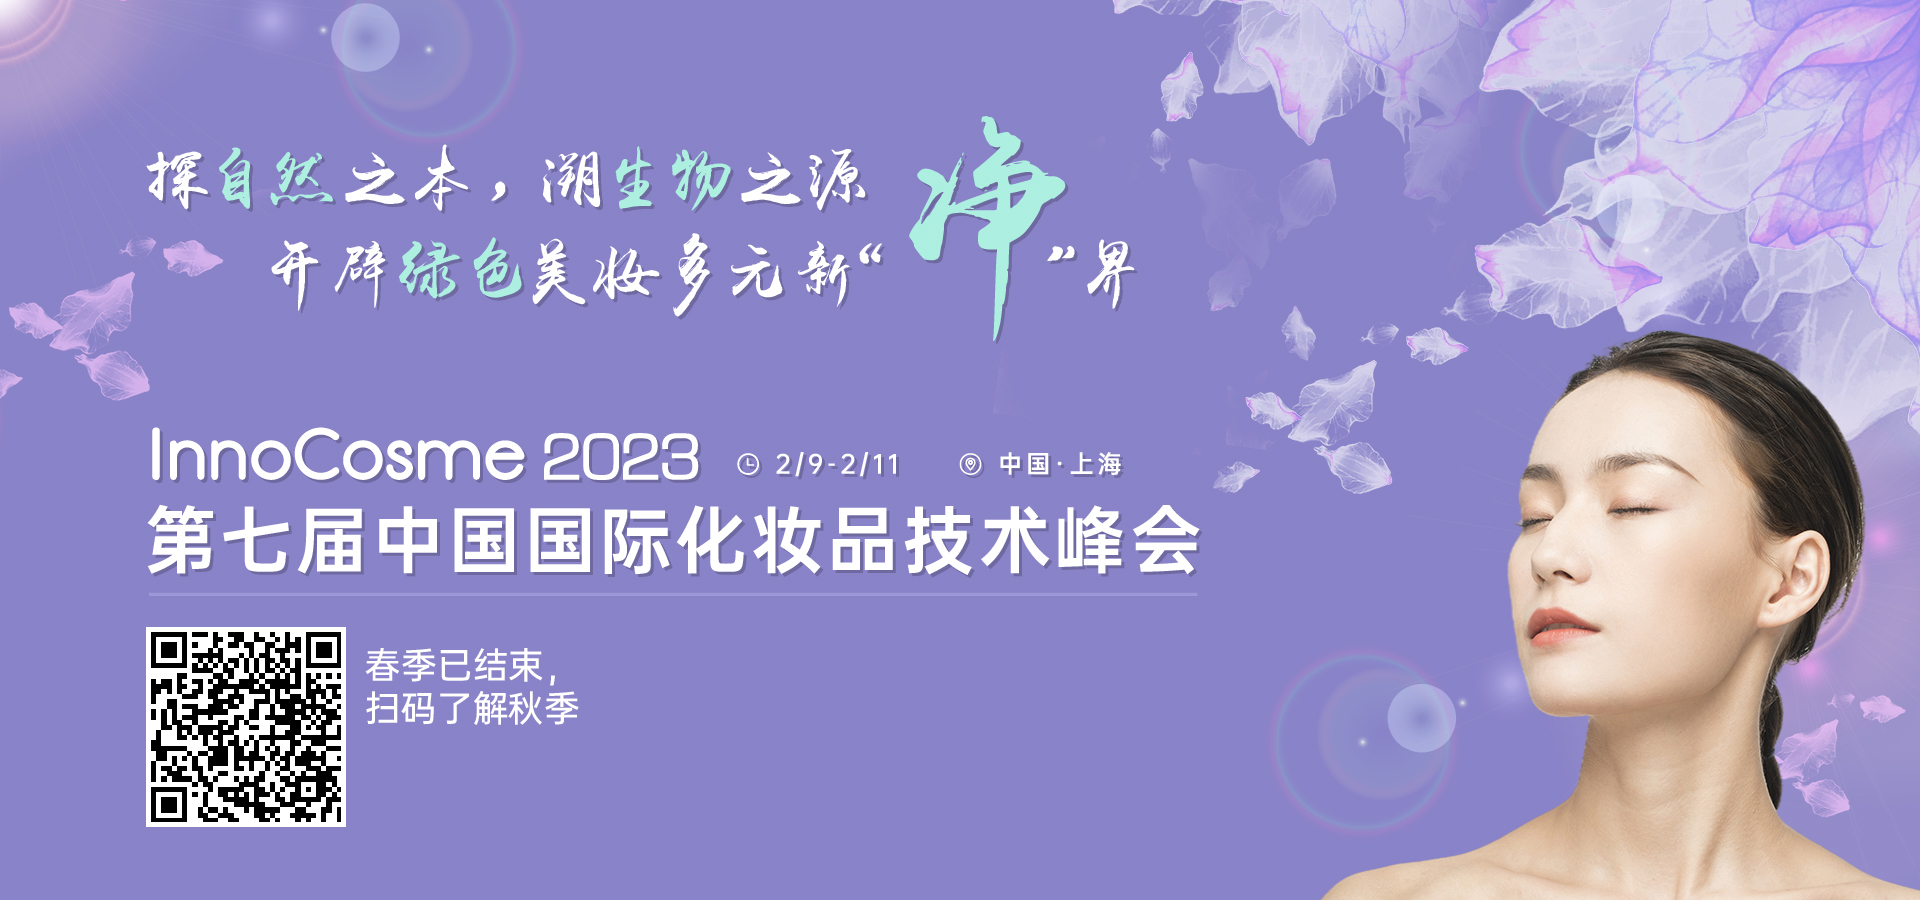 7th world-China Cosmetic Technology Summit